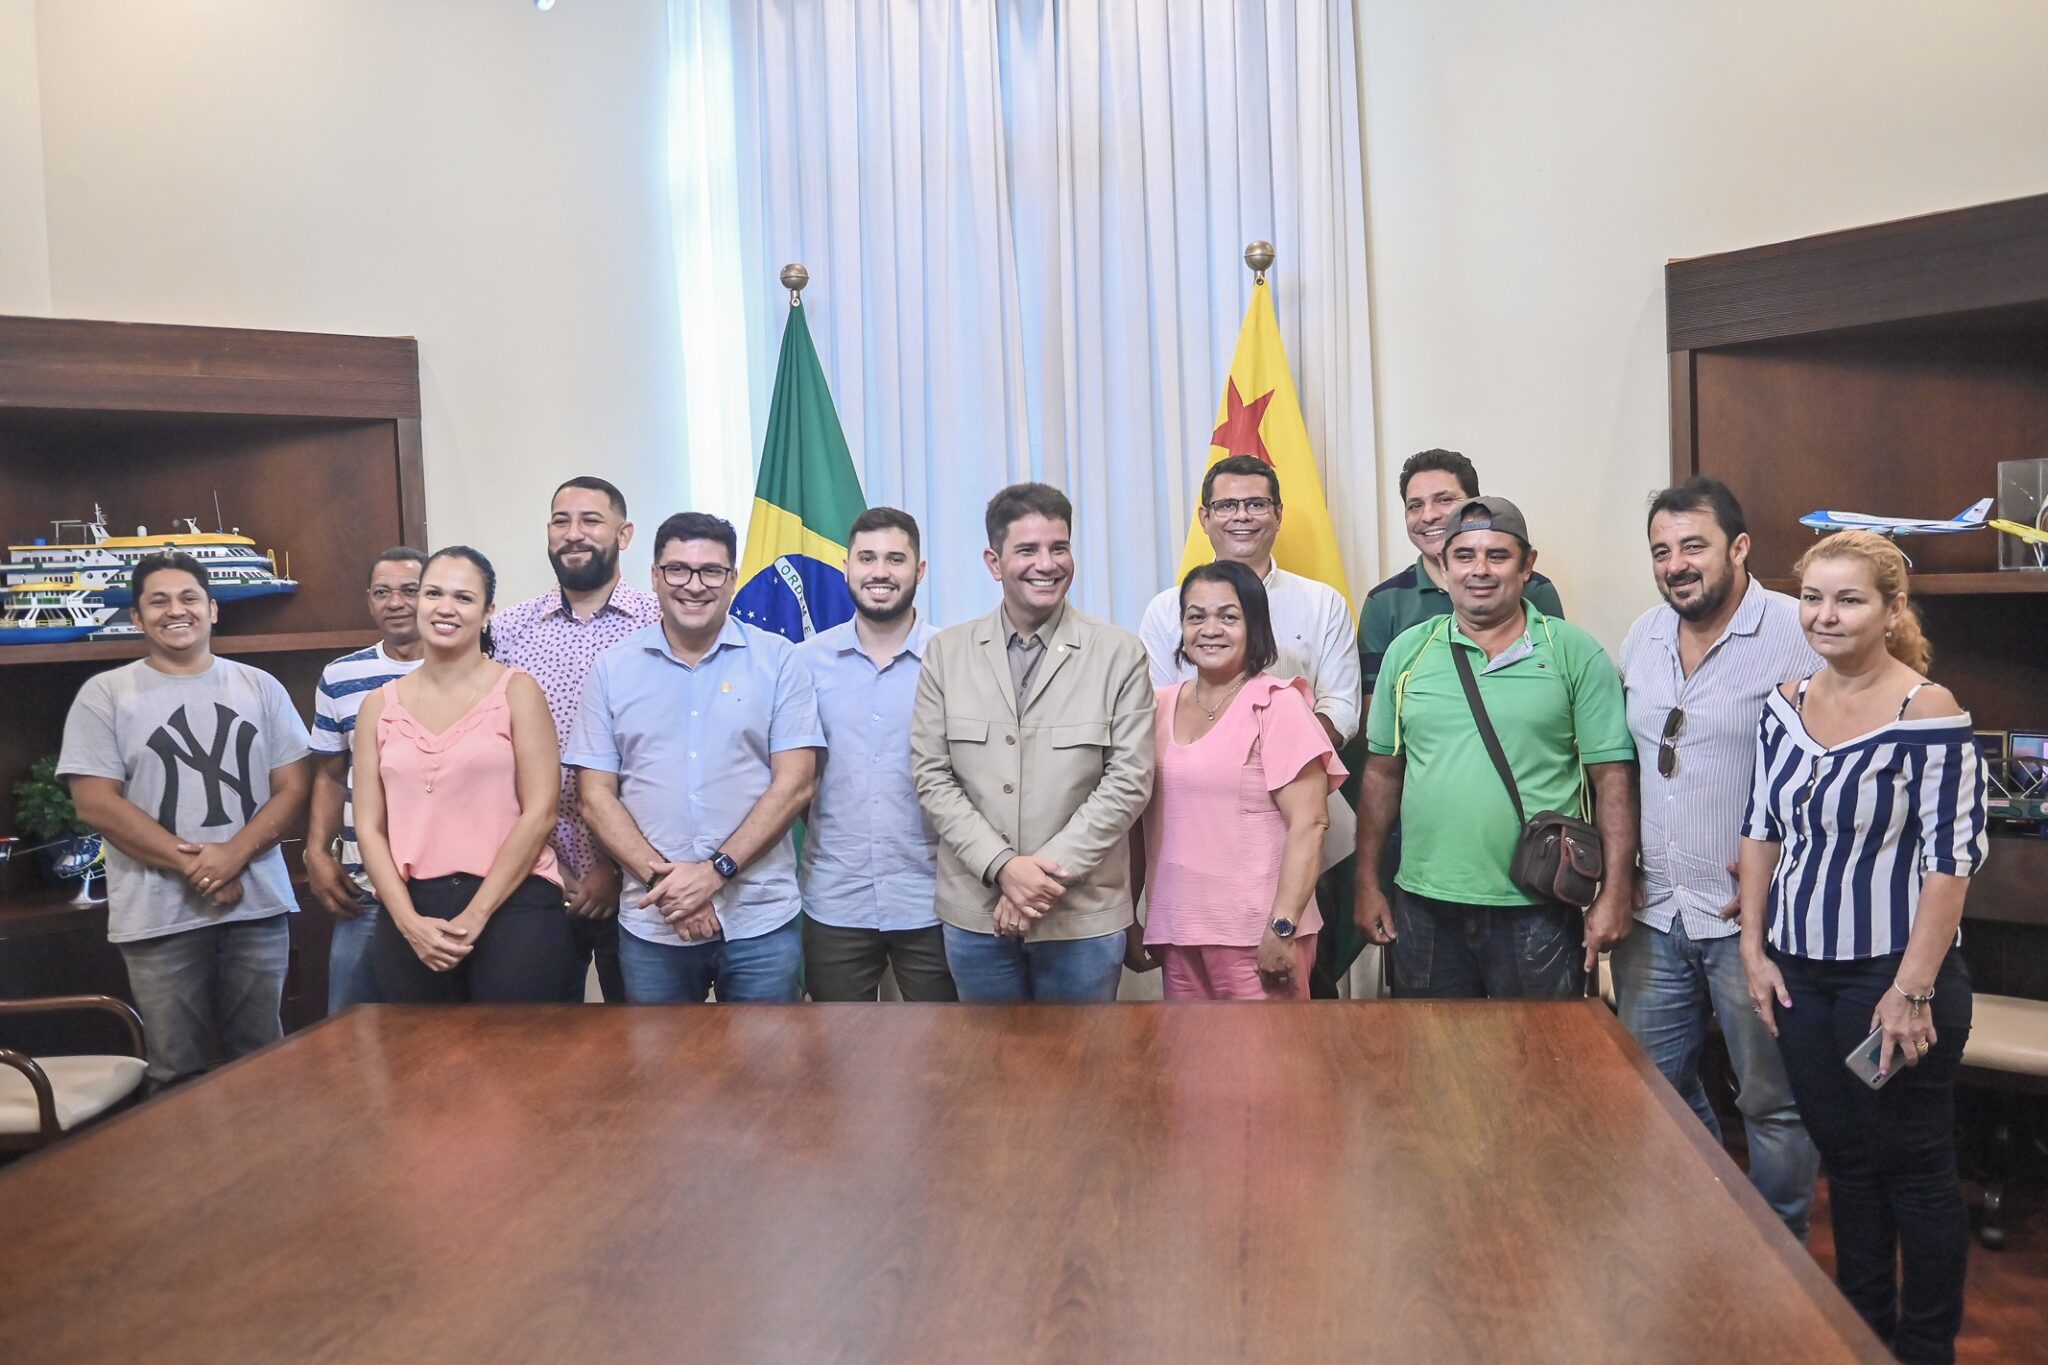 Governo assina ordem de serviço para iniciar reforma da sede da colônia dos pescadores em Rio Branco